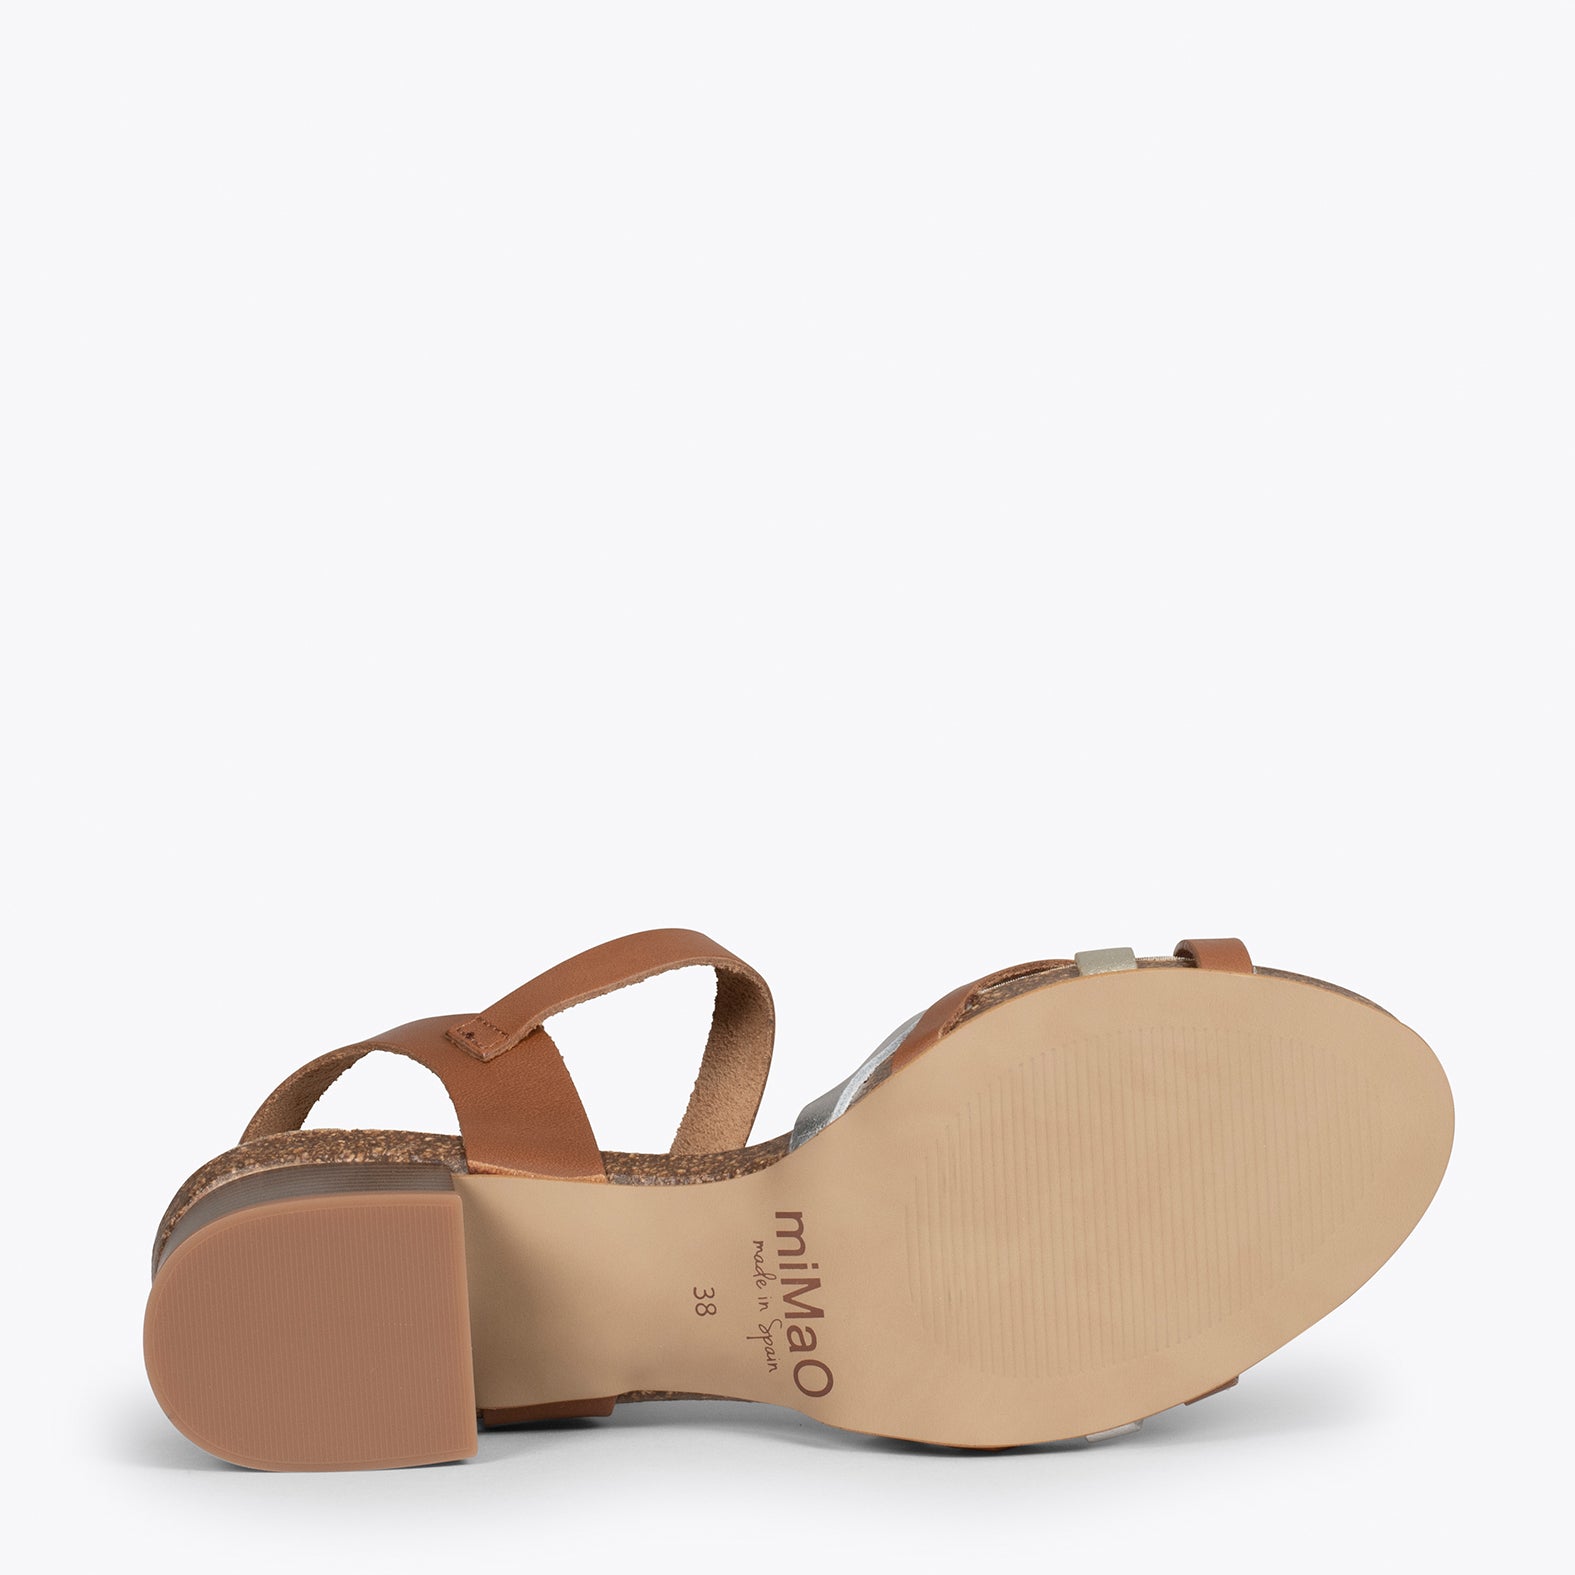 FLEX – BROWN BIO mid heel sandals